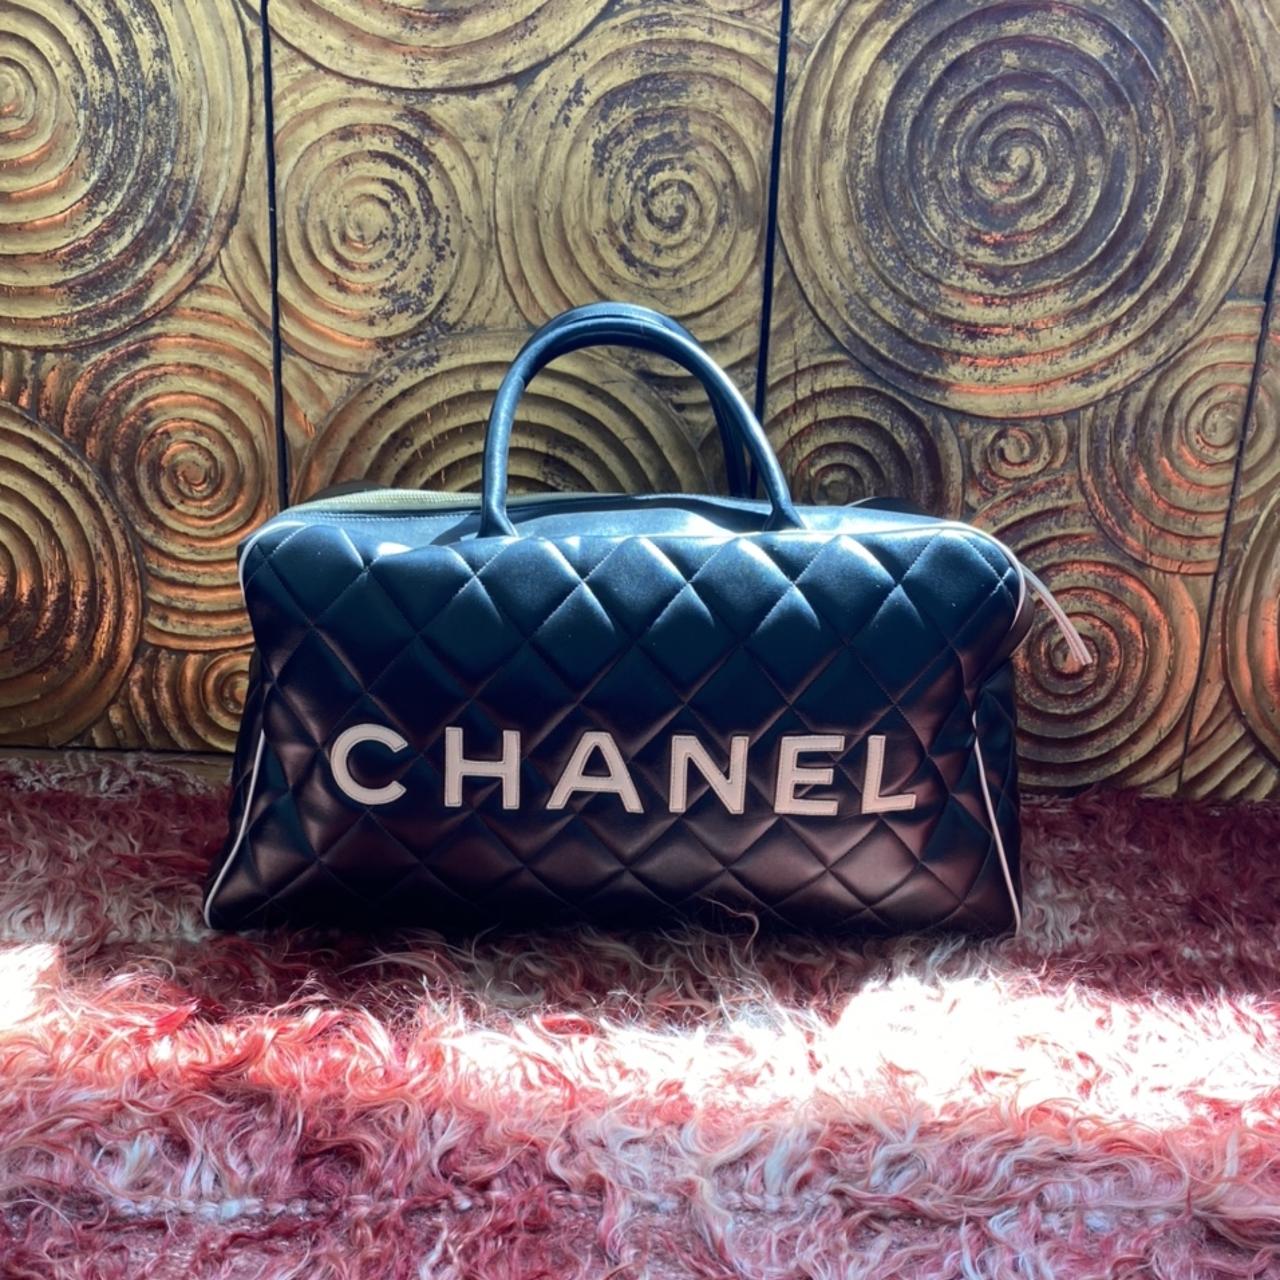 ◾️ C H A N E L Iconic Chanel vintage XXL Boston bag, - Depop